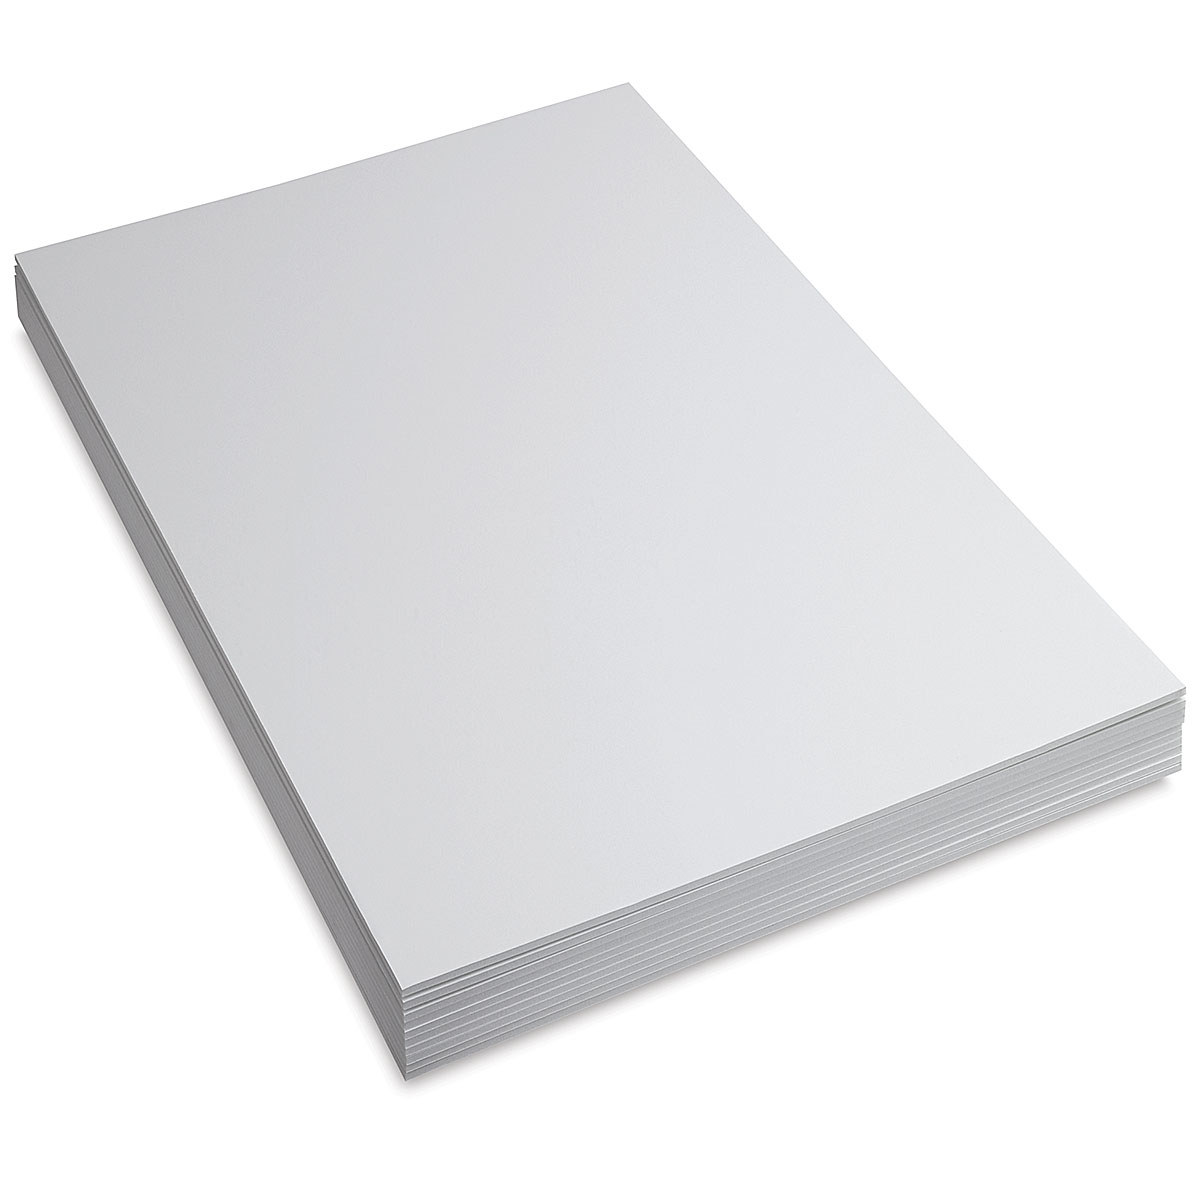 210mm x 297mm Acrux7 A4 16 Sheet White Foam Board Mount Board 5mm Thick Foam Sheet Sign Display Model Backdrop Craft 